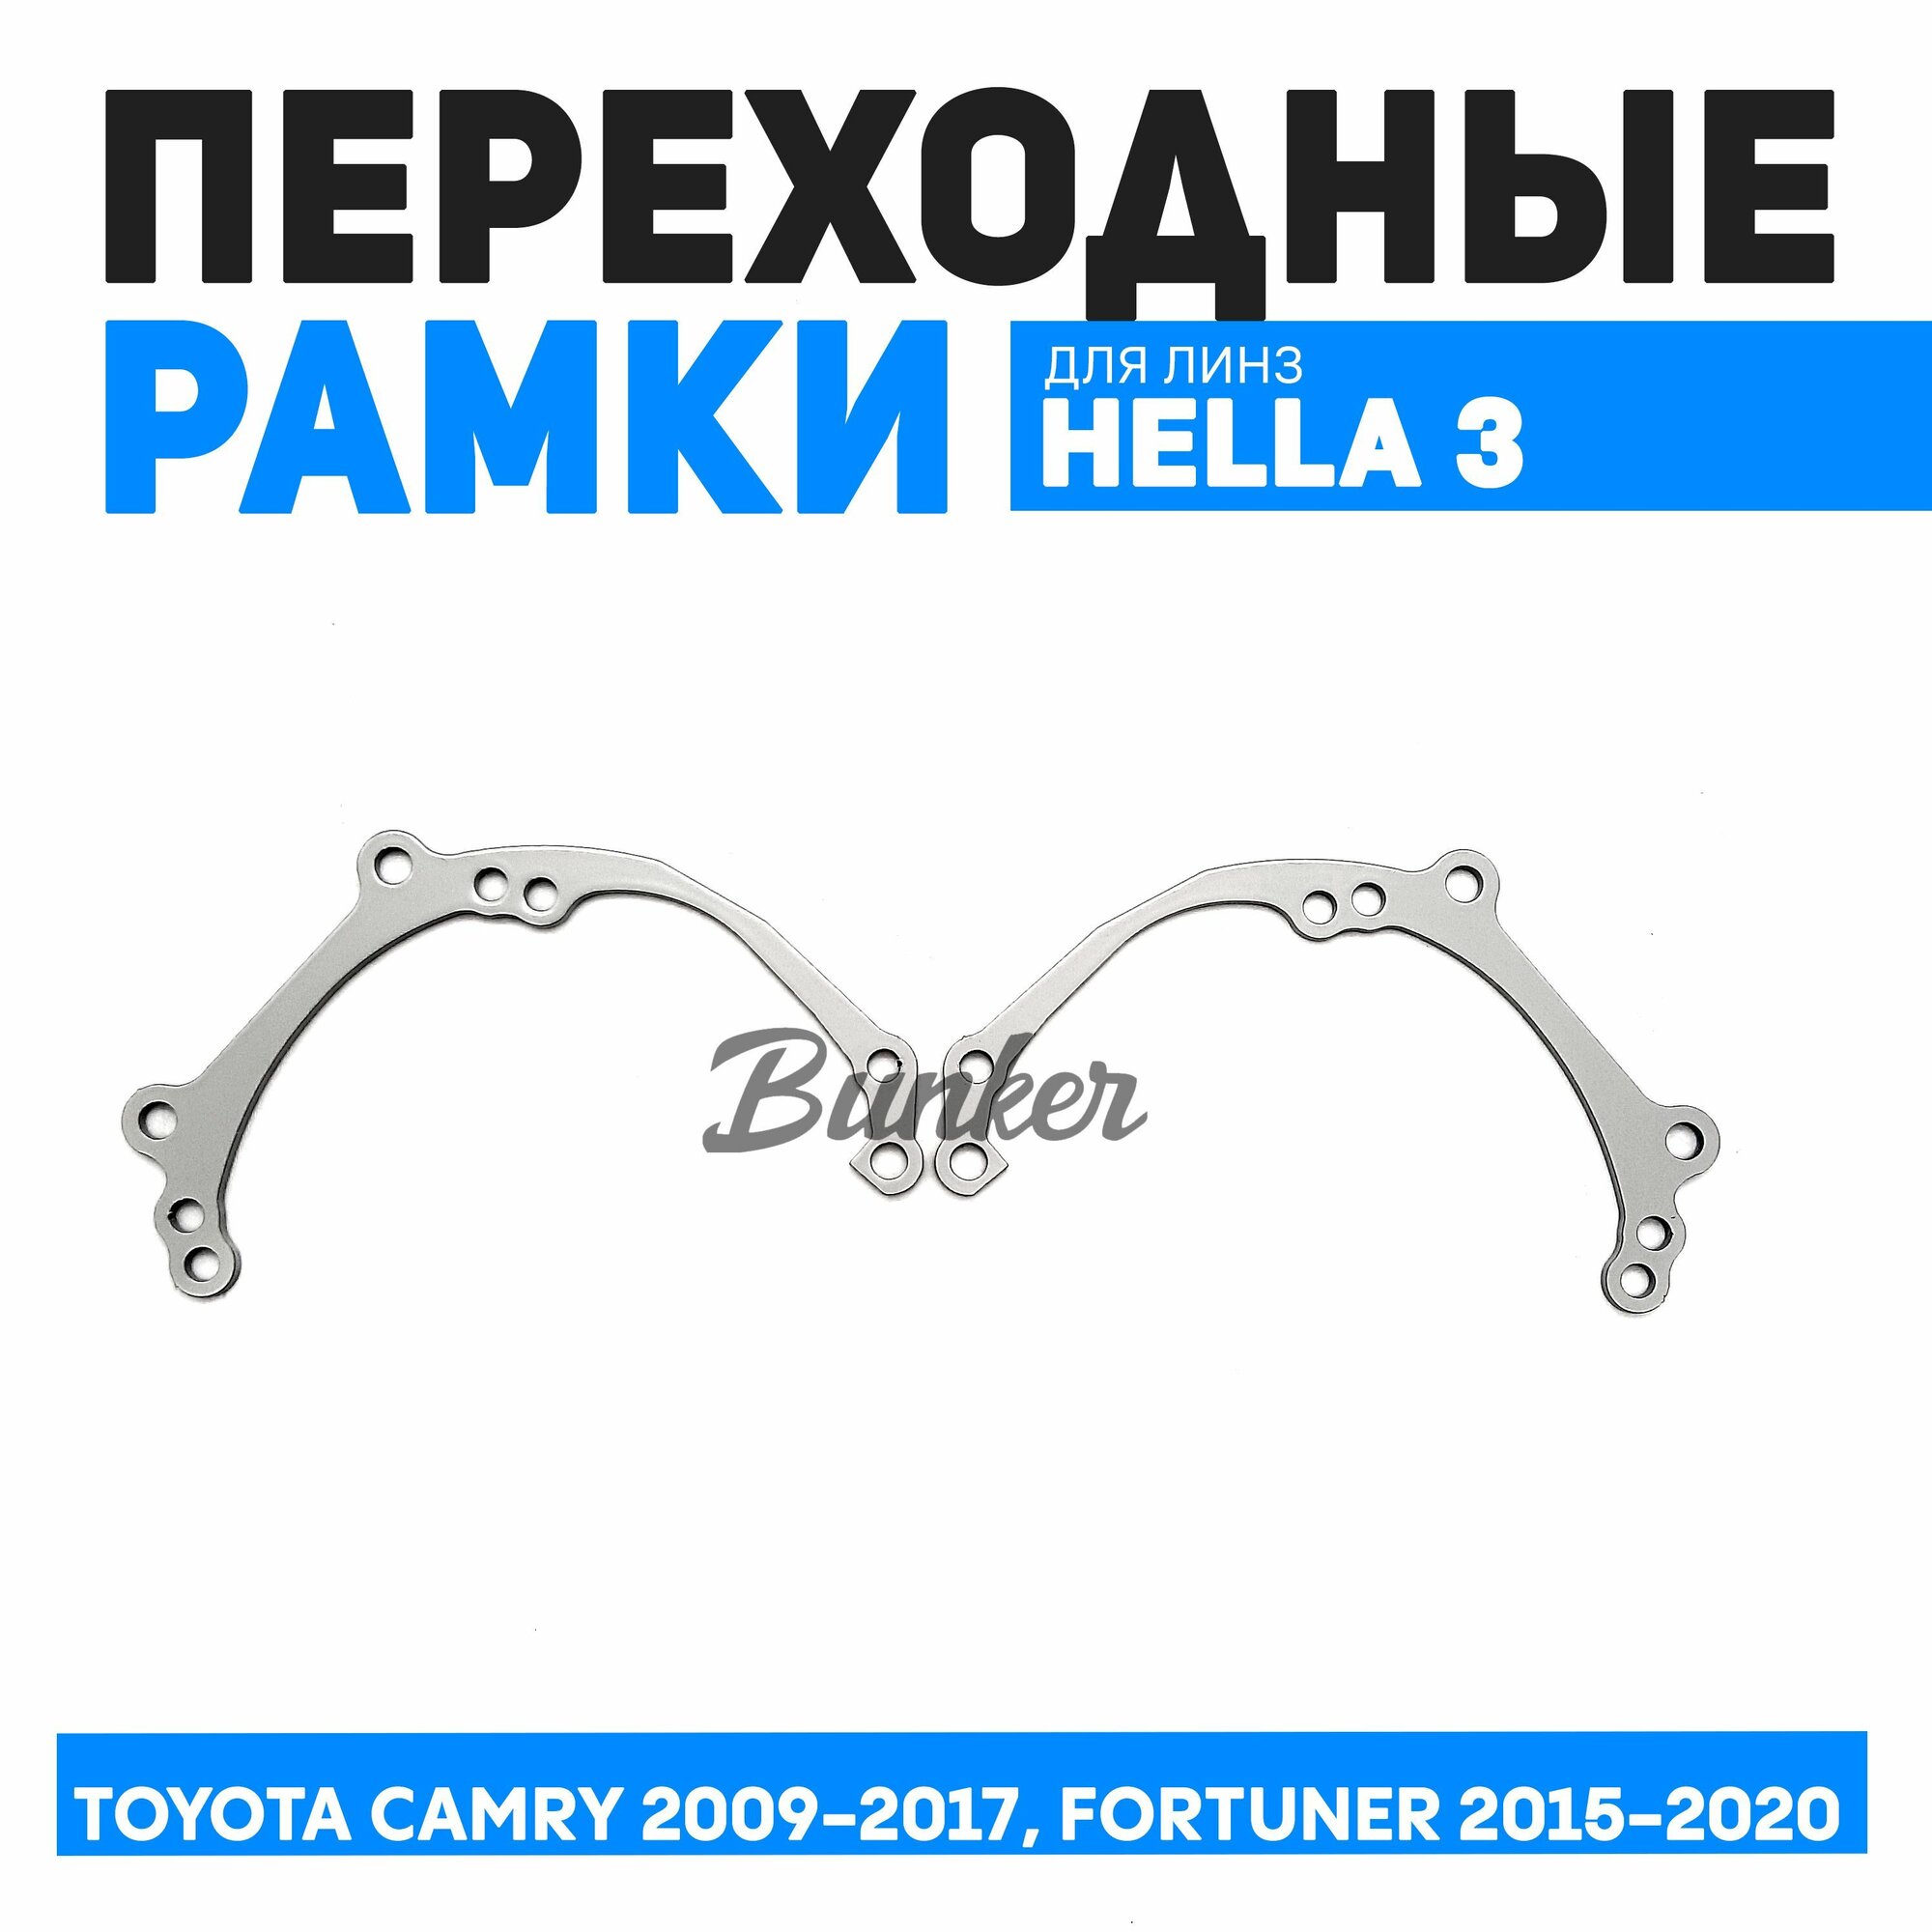 Переходные рамки для замены линз Toyota Camry 2009-2017, Fortuner 2015-2020